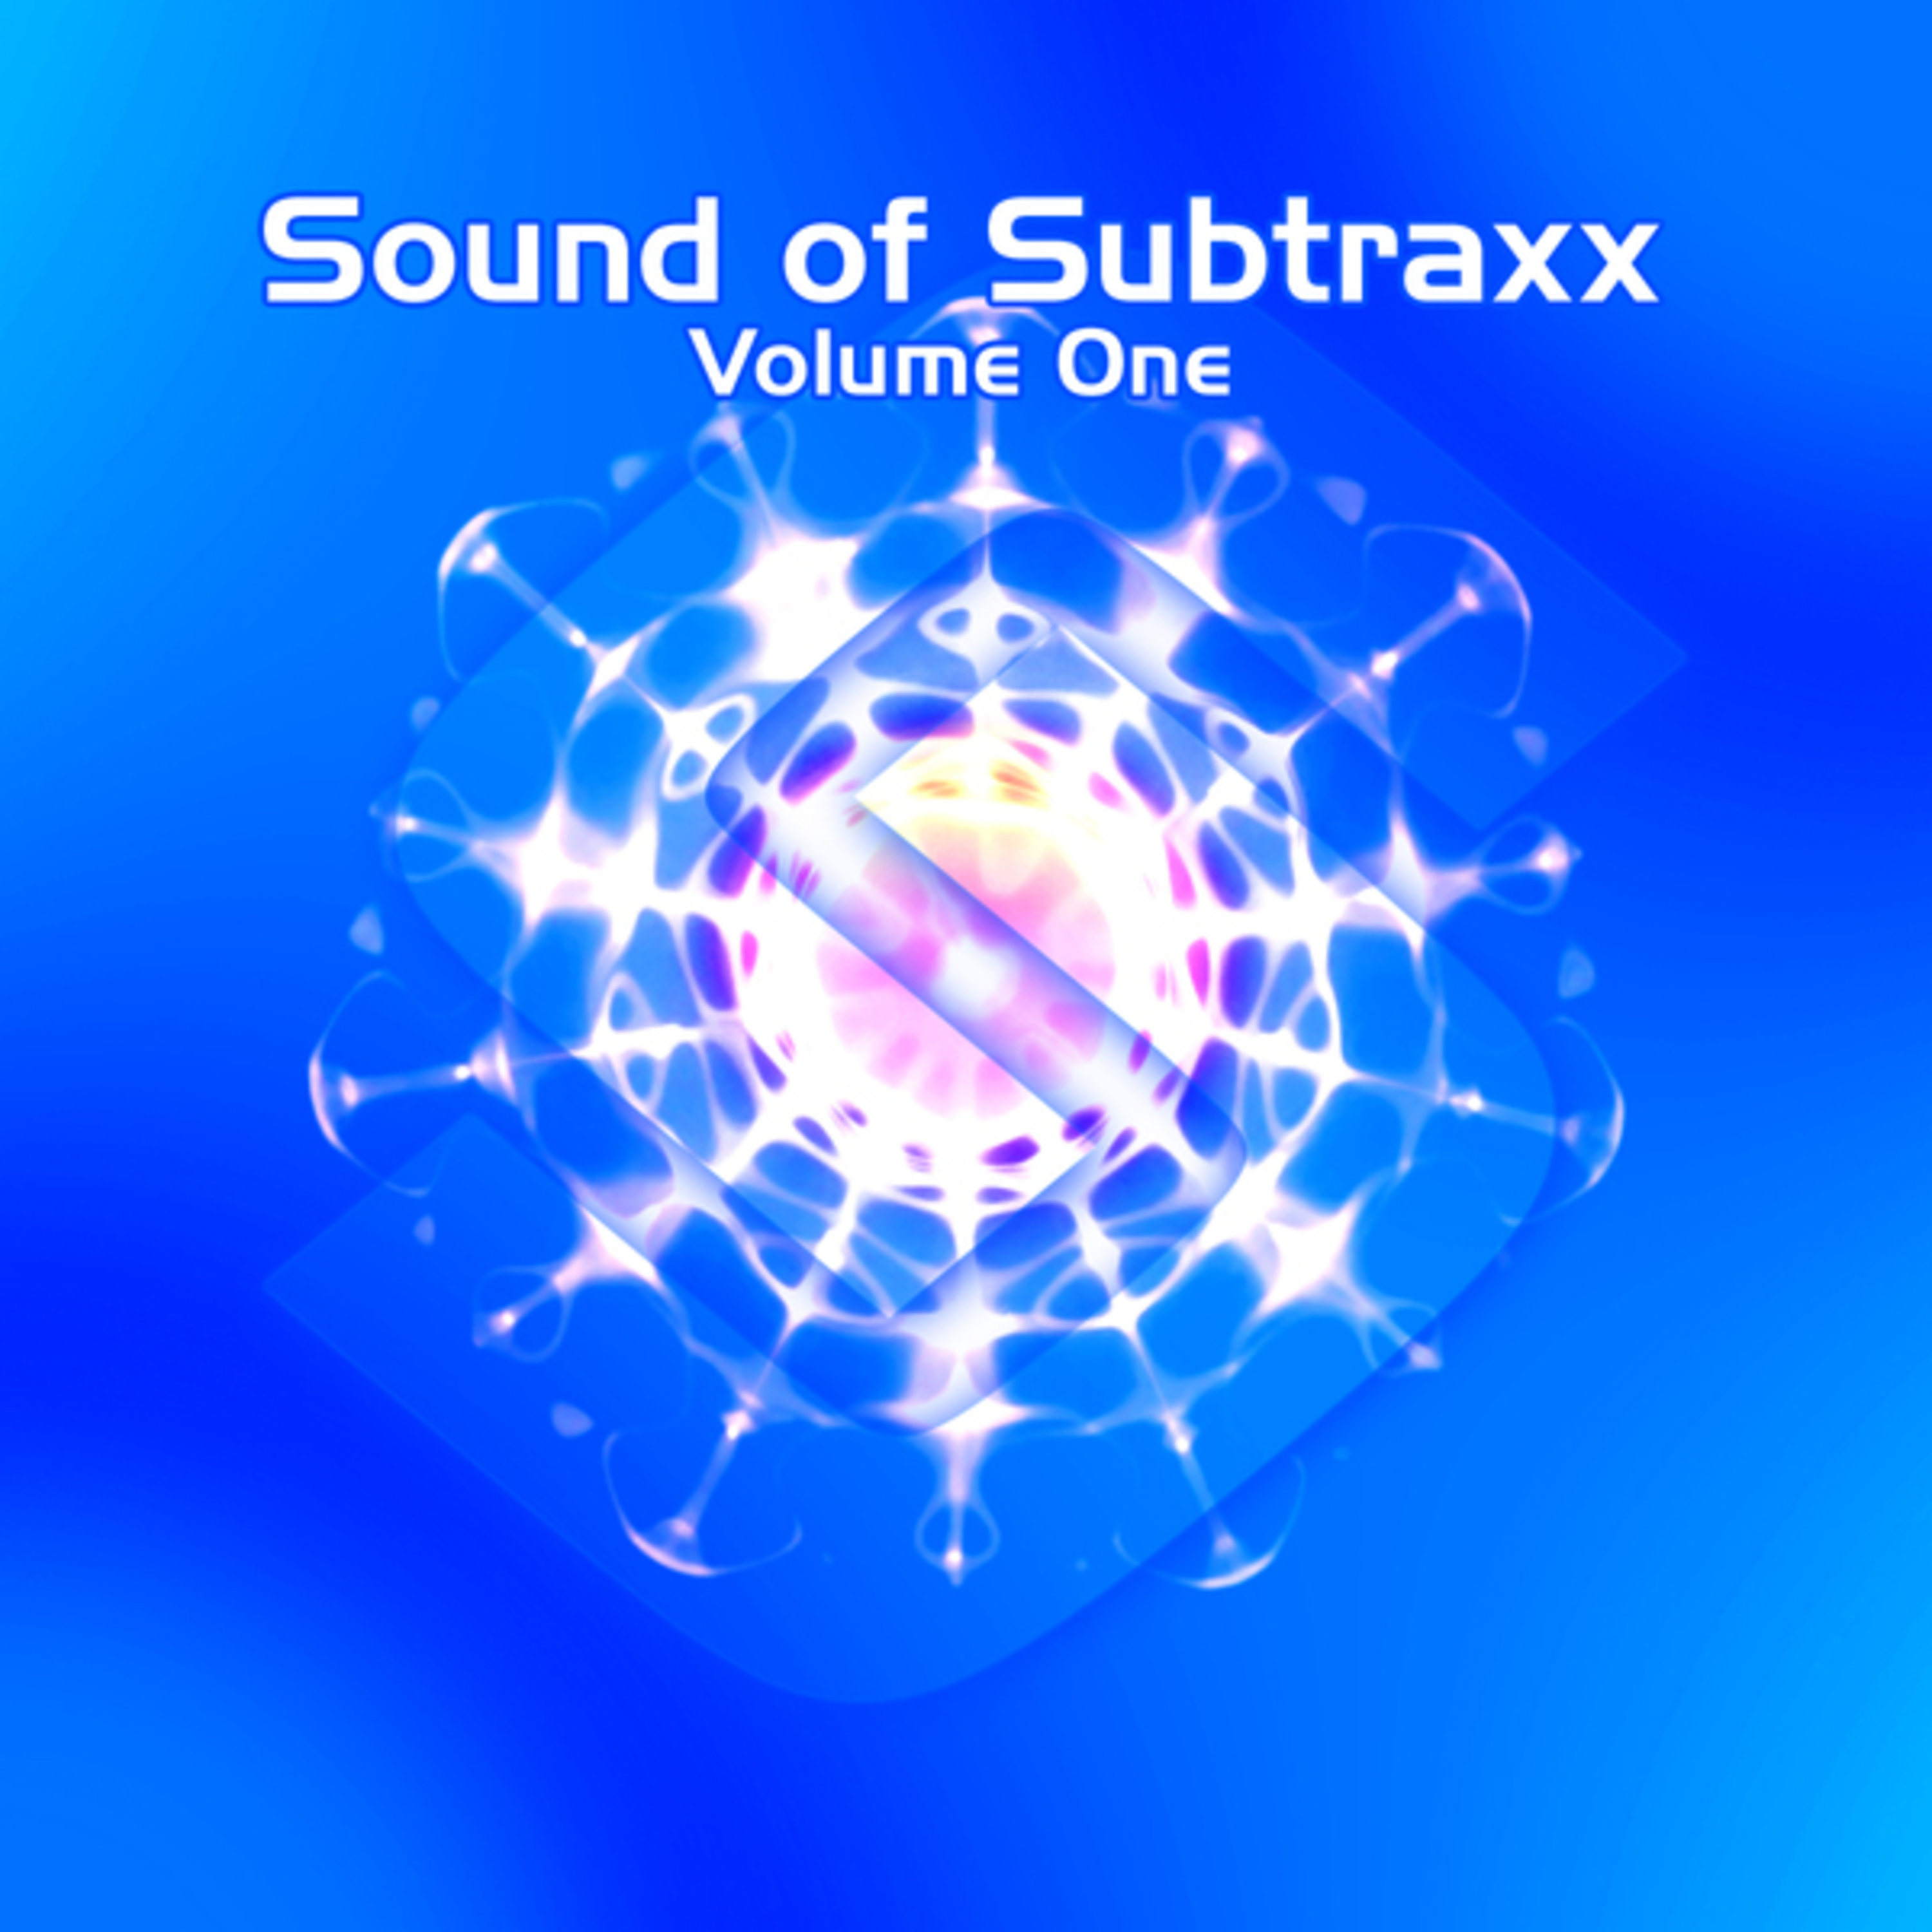 Sound Of Subtraxx - Volume 1